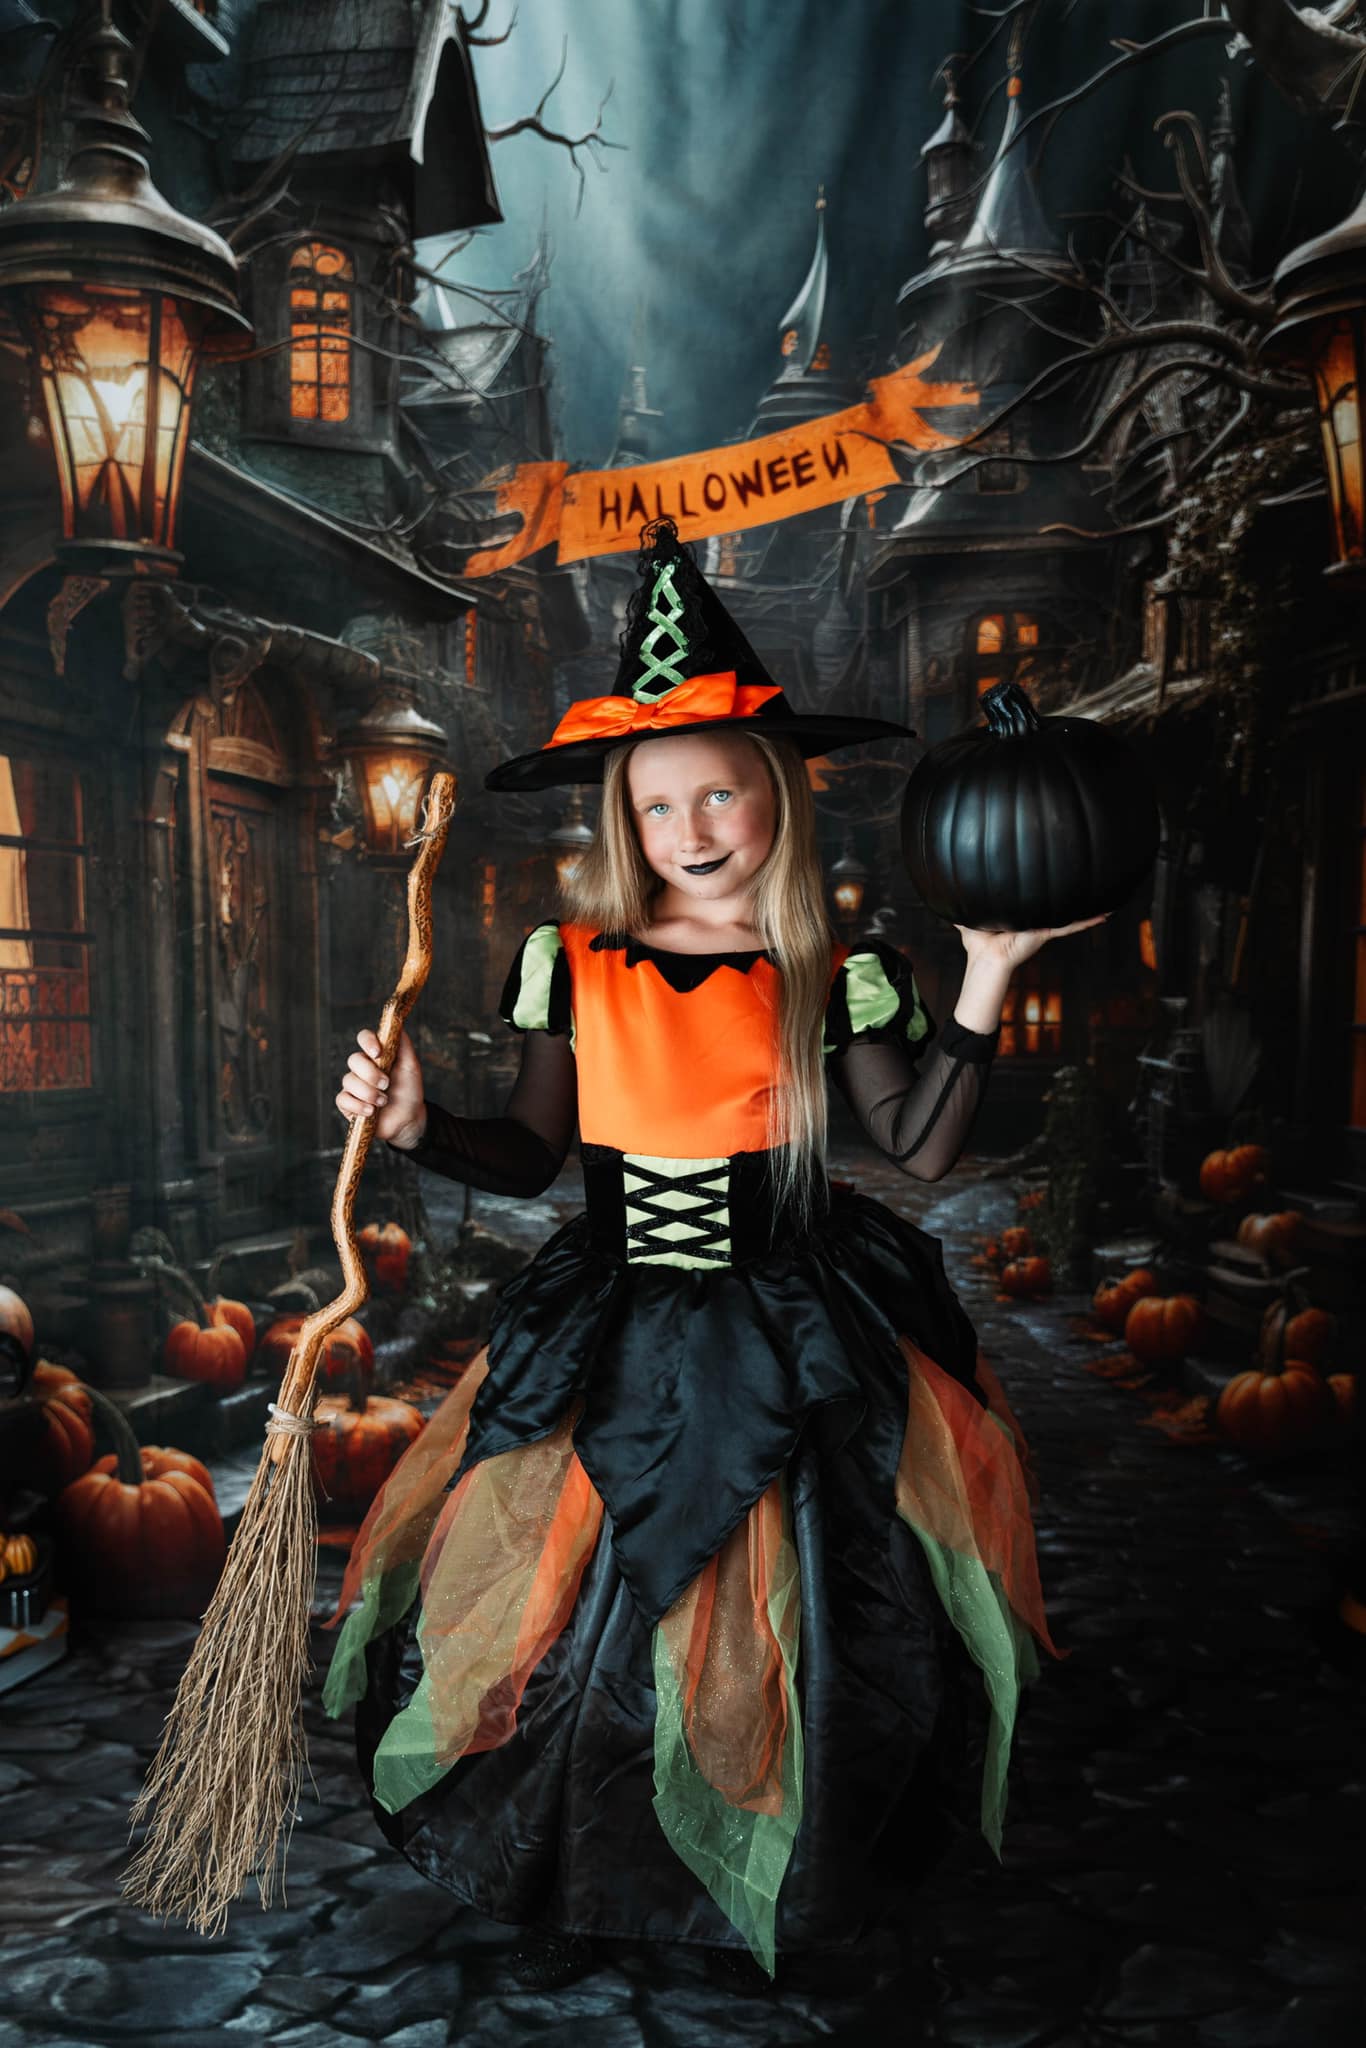 Kate Halloween Pumpkin Town Backdrop Designed by Emetselch